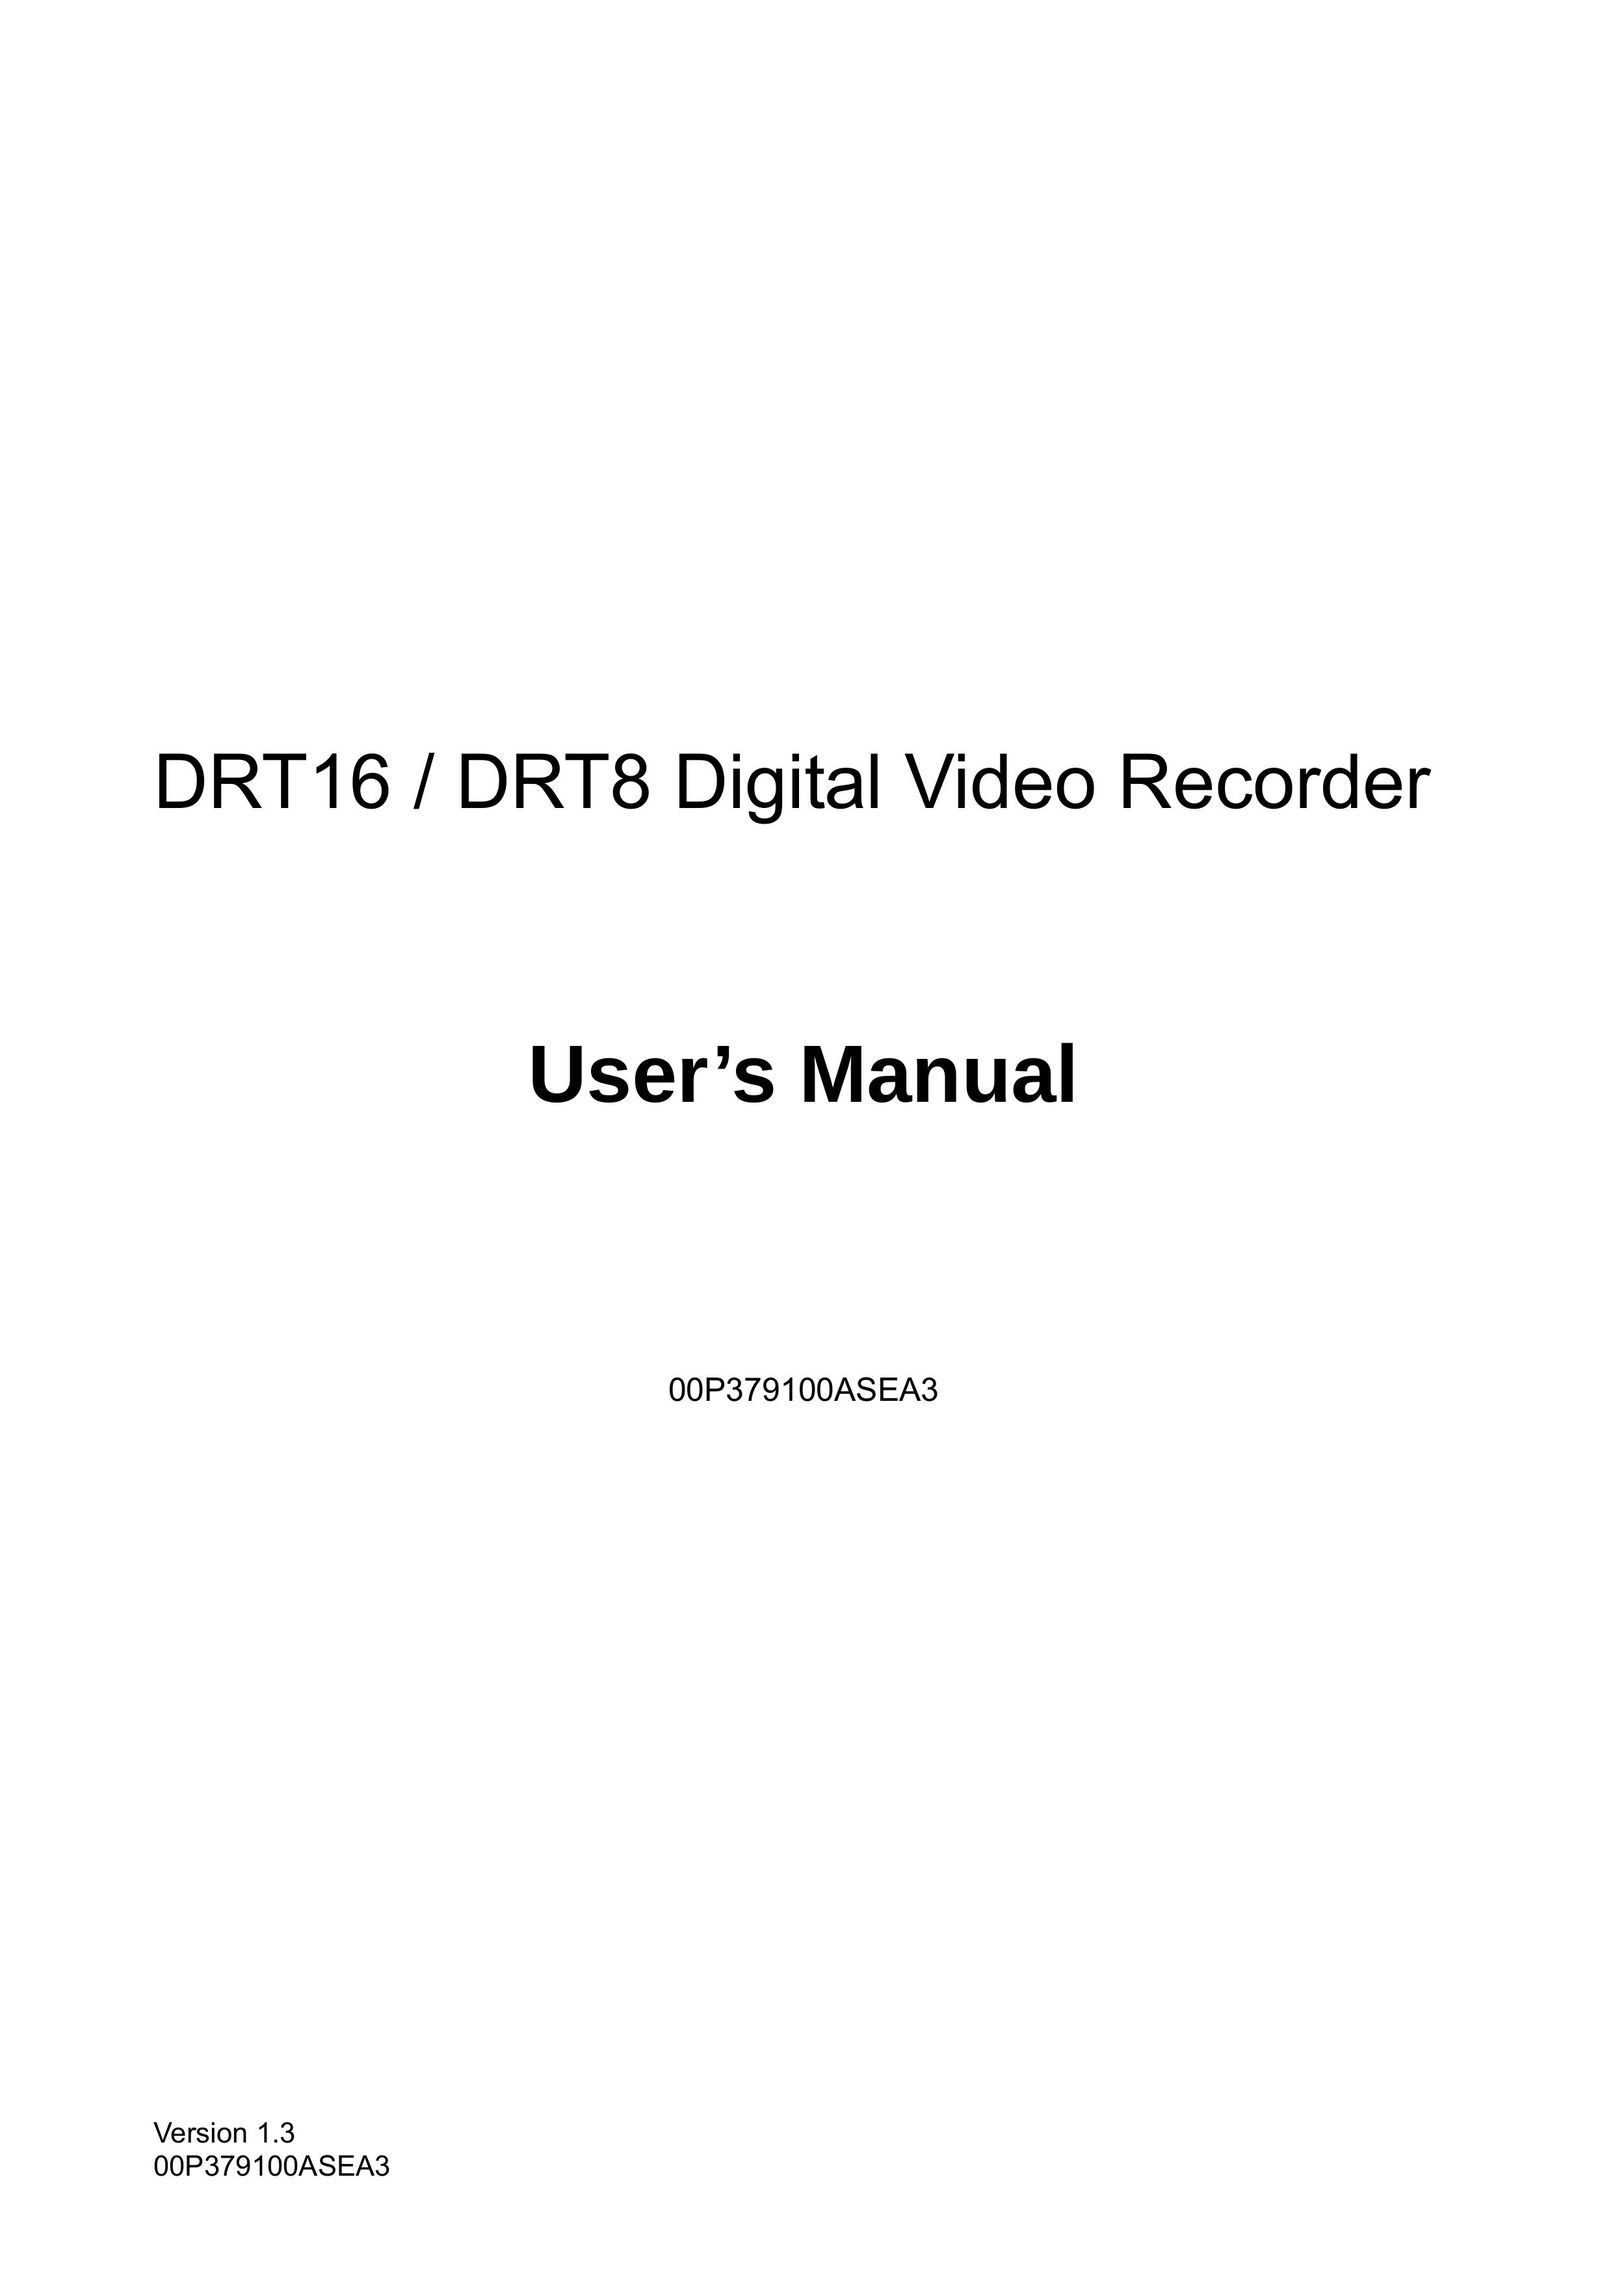 AVE DRT16 DVR User Manual